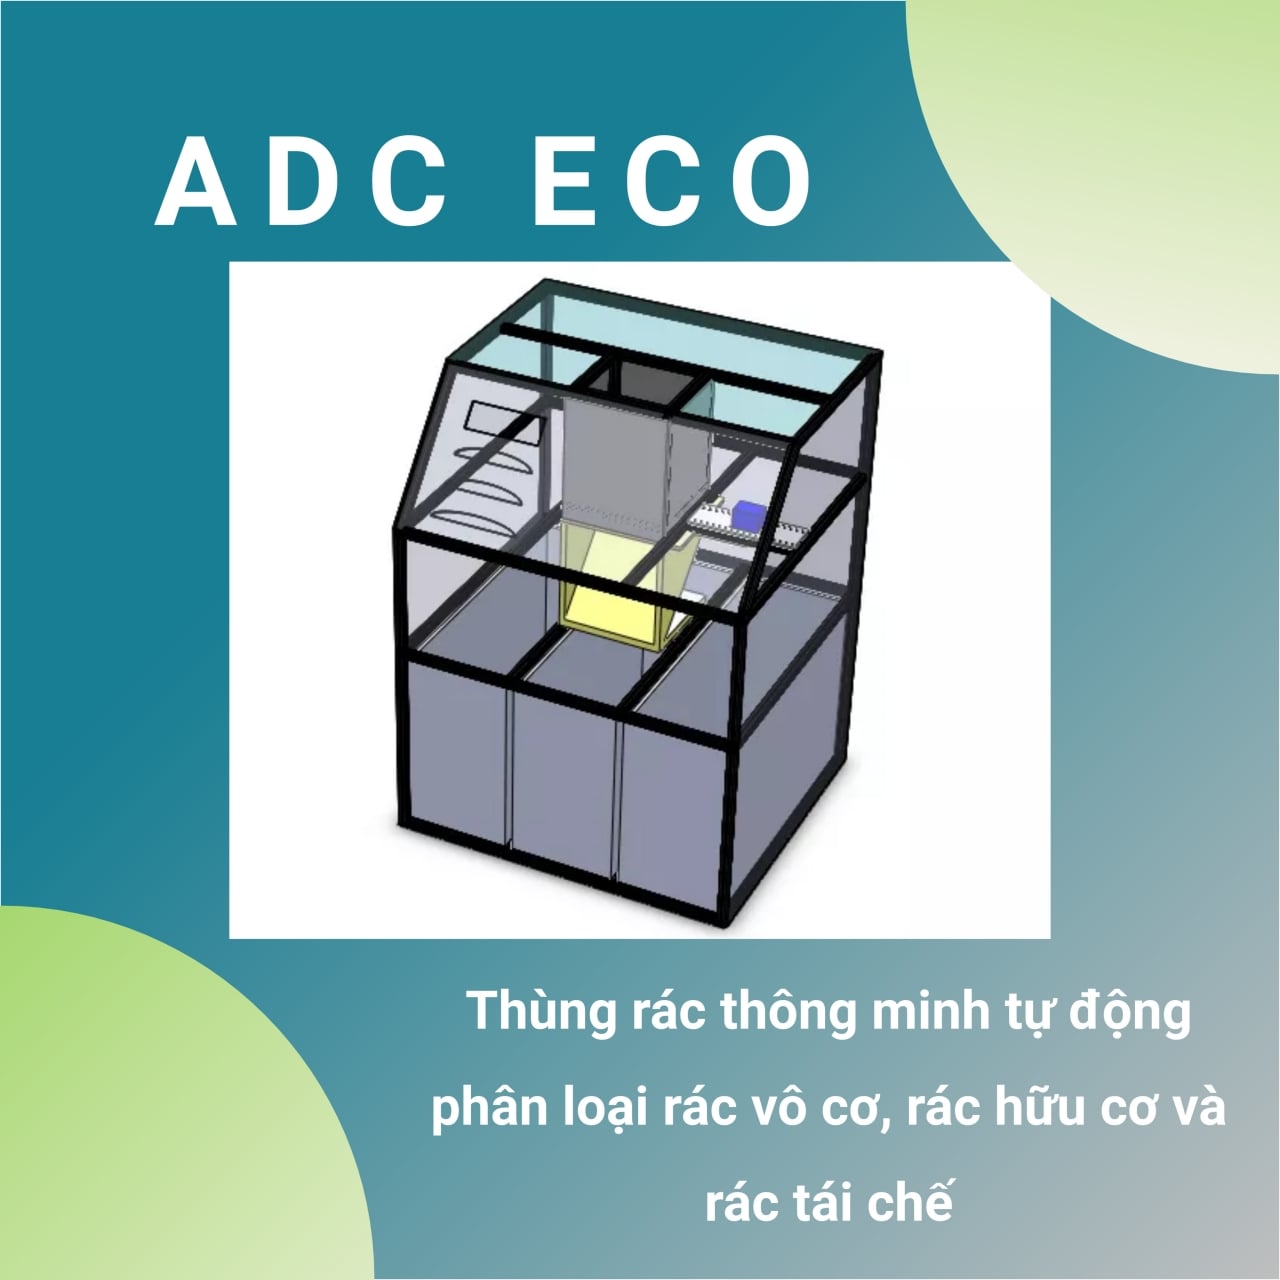 Nhóm ADC Eco - Thùng rác thông minh tự động phân loại rác vô cơ, rác hữu cơ và rác tái chế